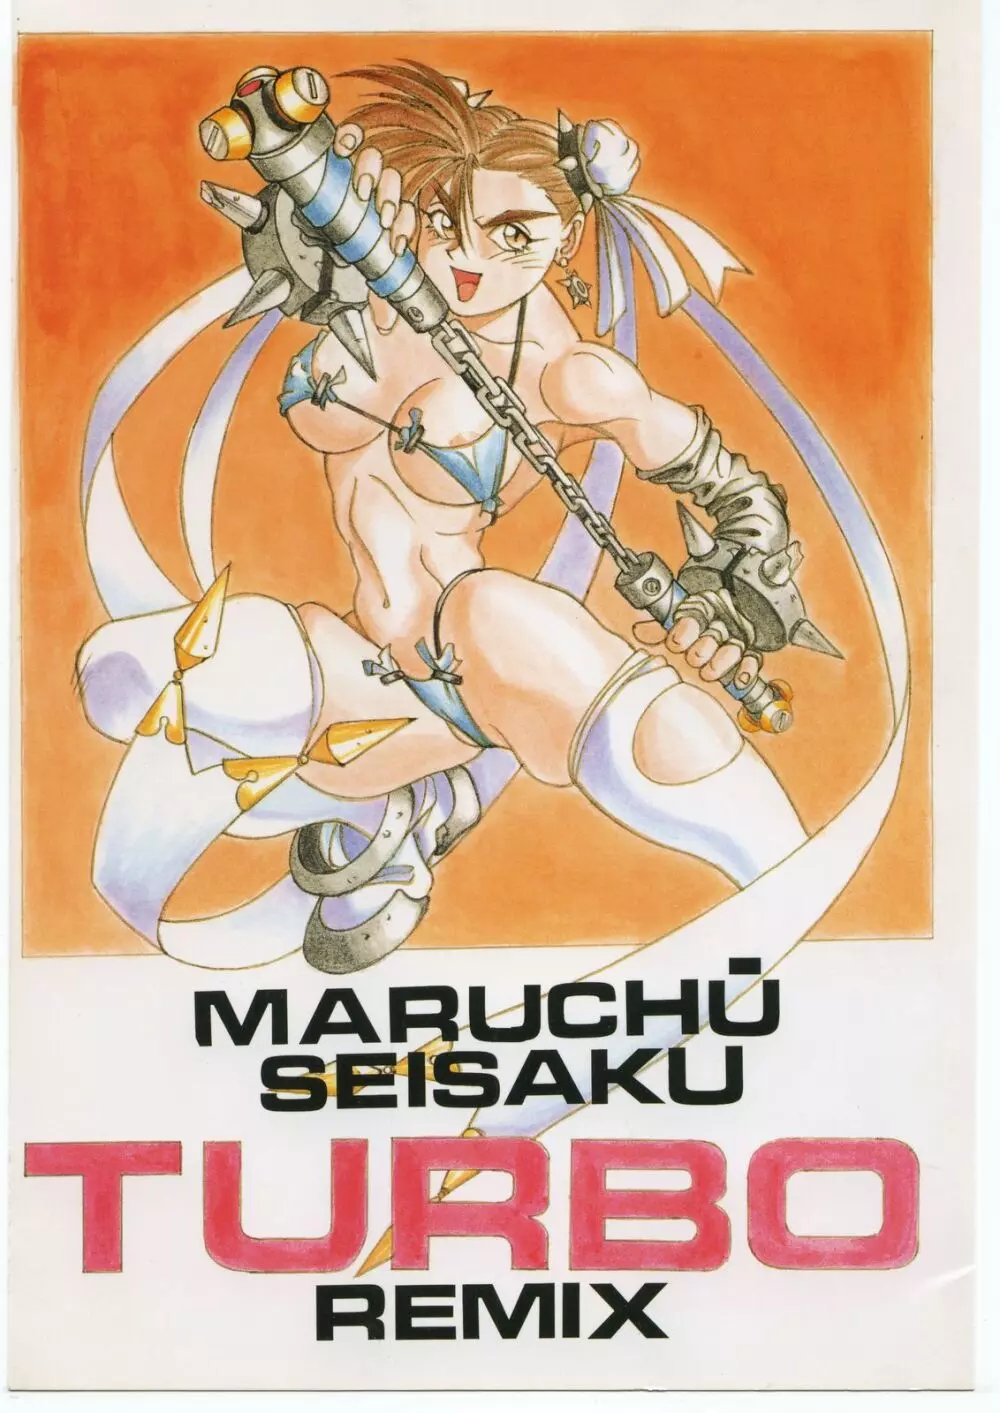 Maruchuu Seisaku Turbo Remix